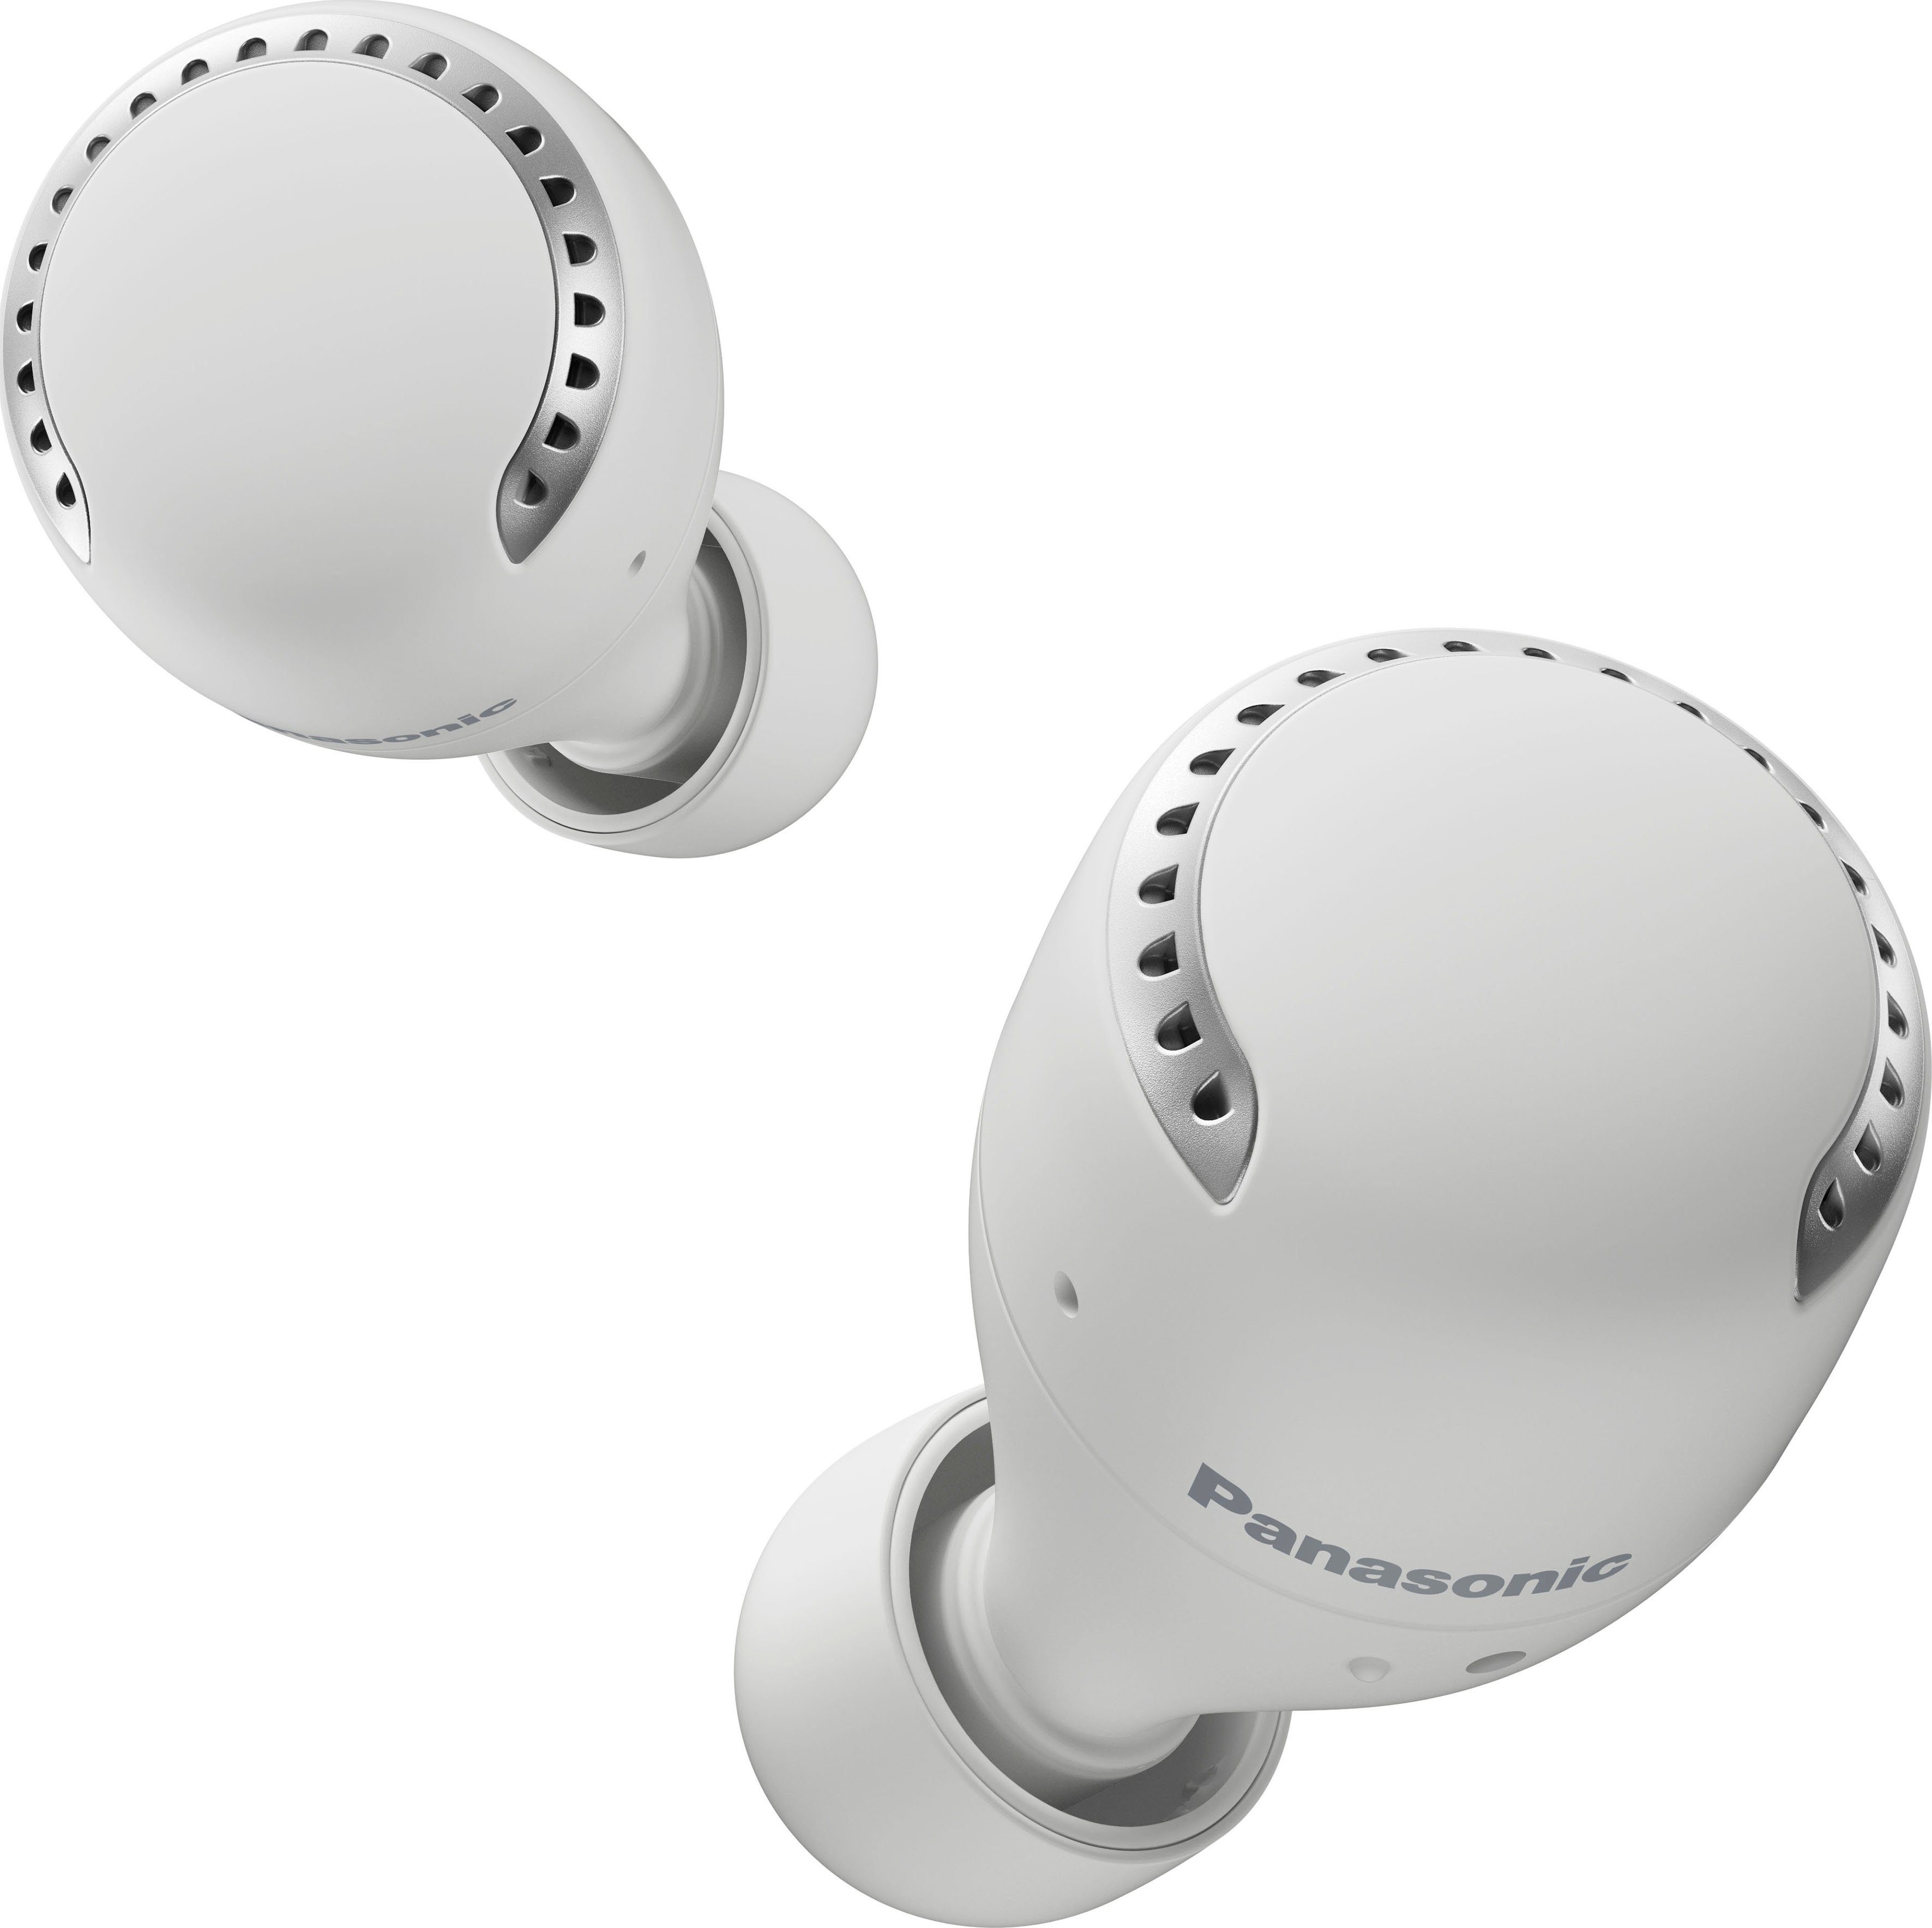 Panasonic RZ-S500WE wireless In-Ear-Kopfhörer (Noise-Cancelling, True weiß Bluetooth) Wireless, Sprachsteuerung